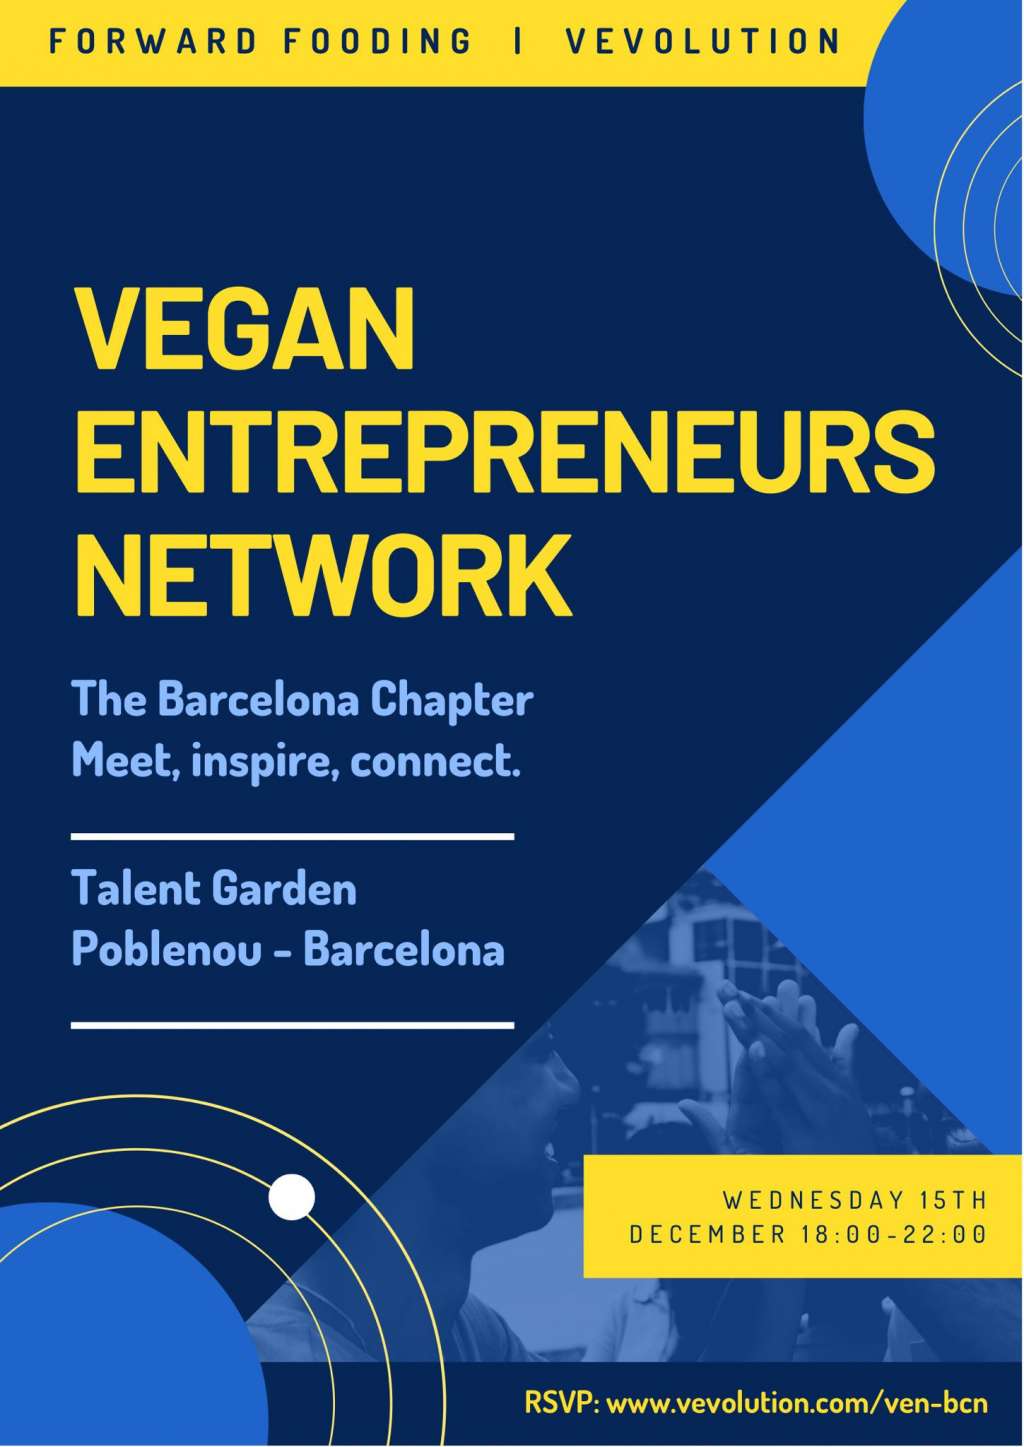 V-Entrepreneurs Barcelona Launch Event